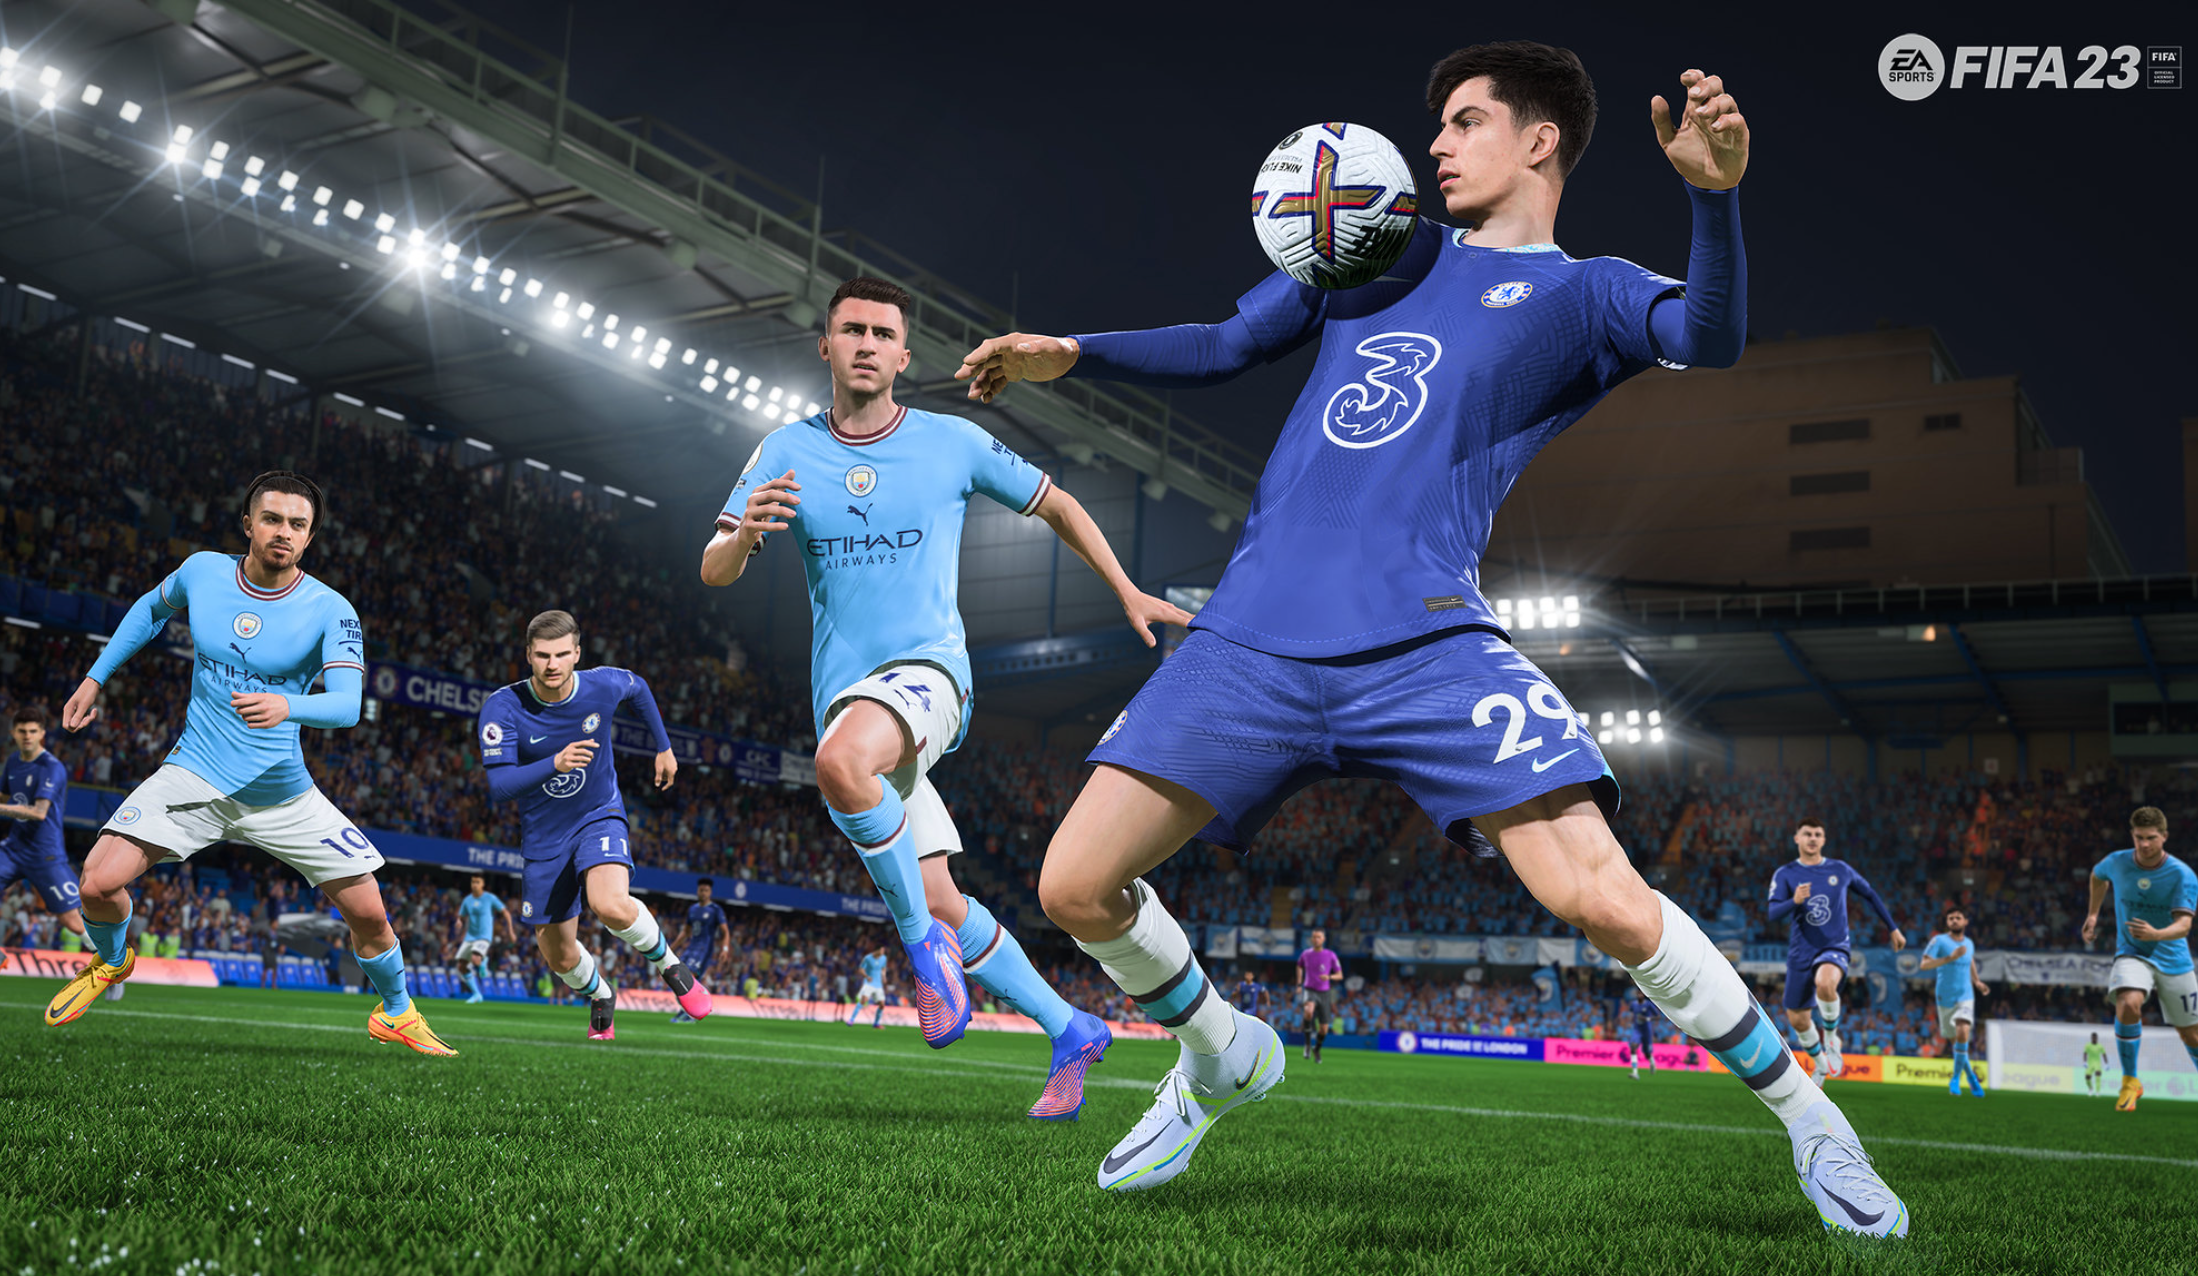 FIFA 23 release